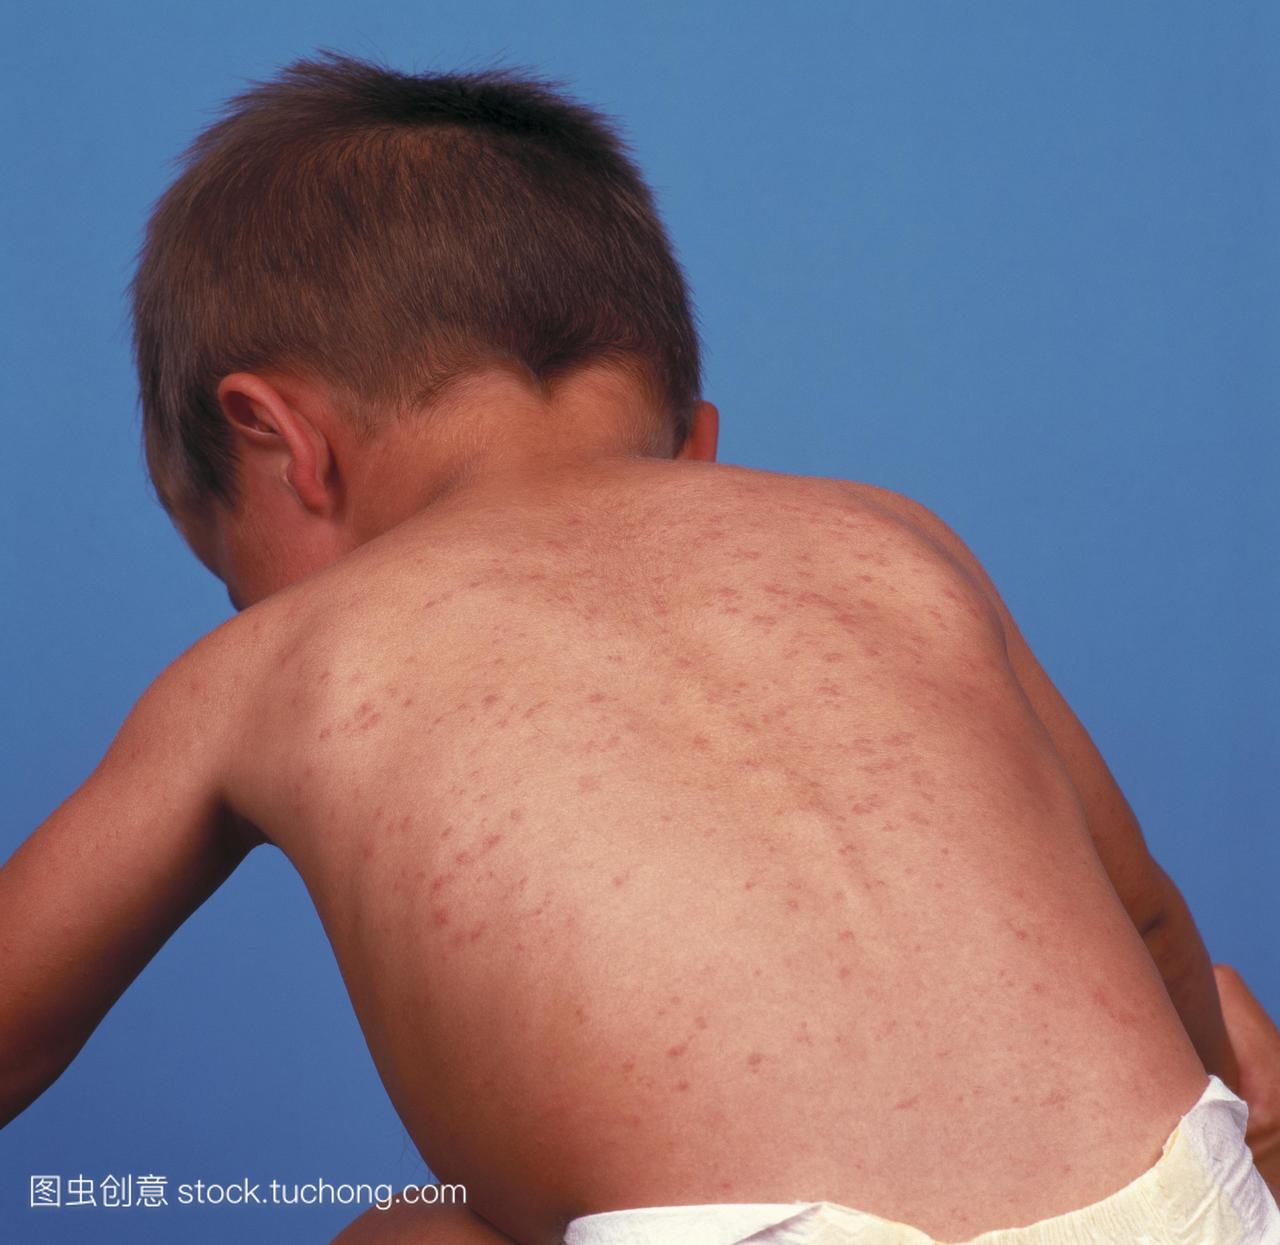 麻疹在孩子的背上起疹子。麻疹是一种传染性极